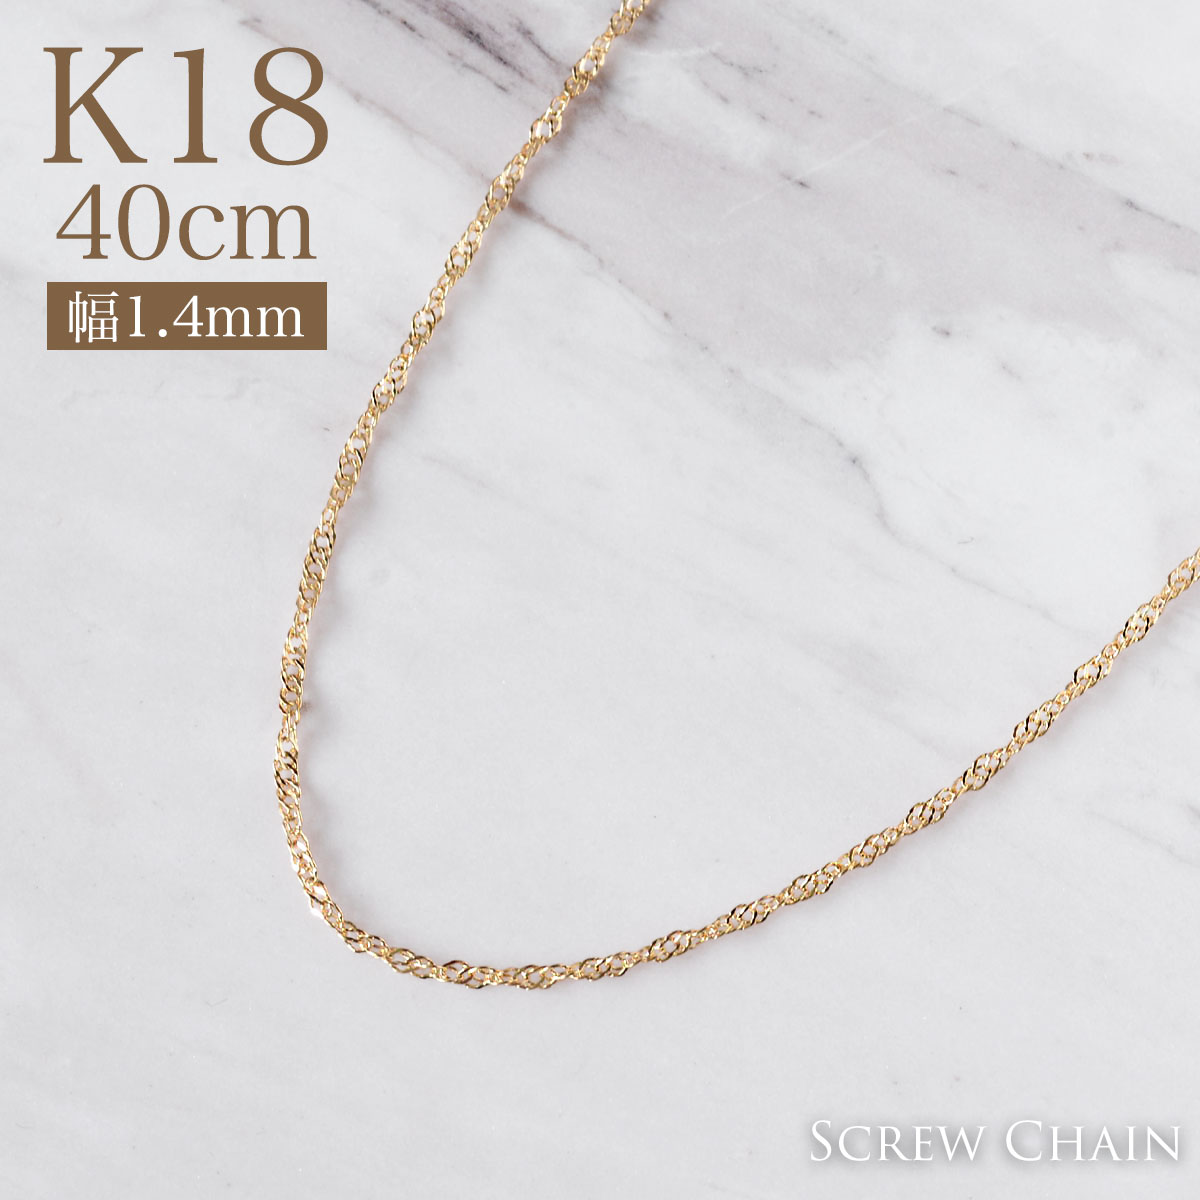 幅1.4mm 40cm キラキラ存在感放つスクリューチェーン k18ネックレス お買い得モデル K18 イエローゴールド スクリュー 新しい プレゼント gold チェーン necklace ギフト -3cmアジャスター付き